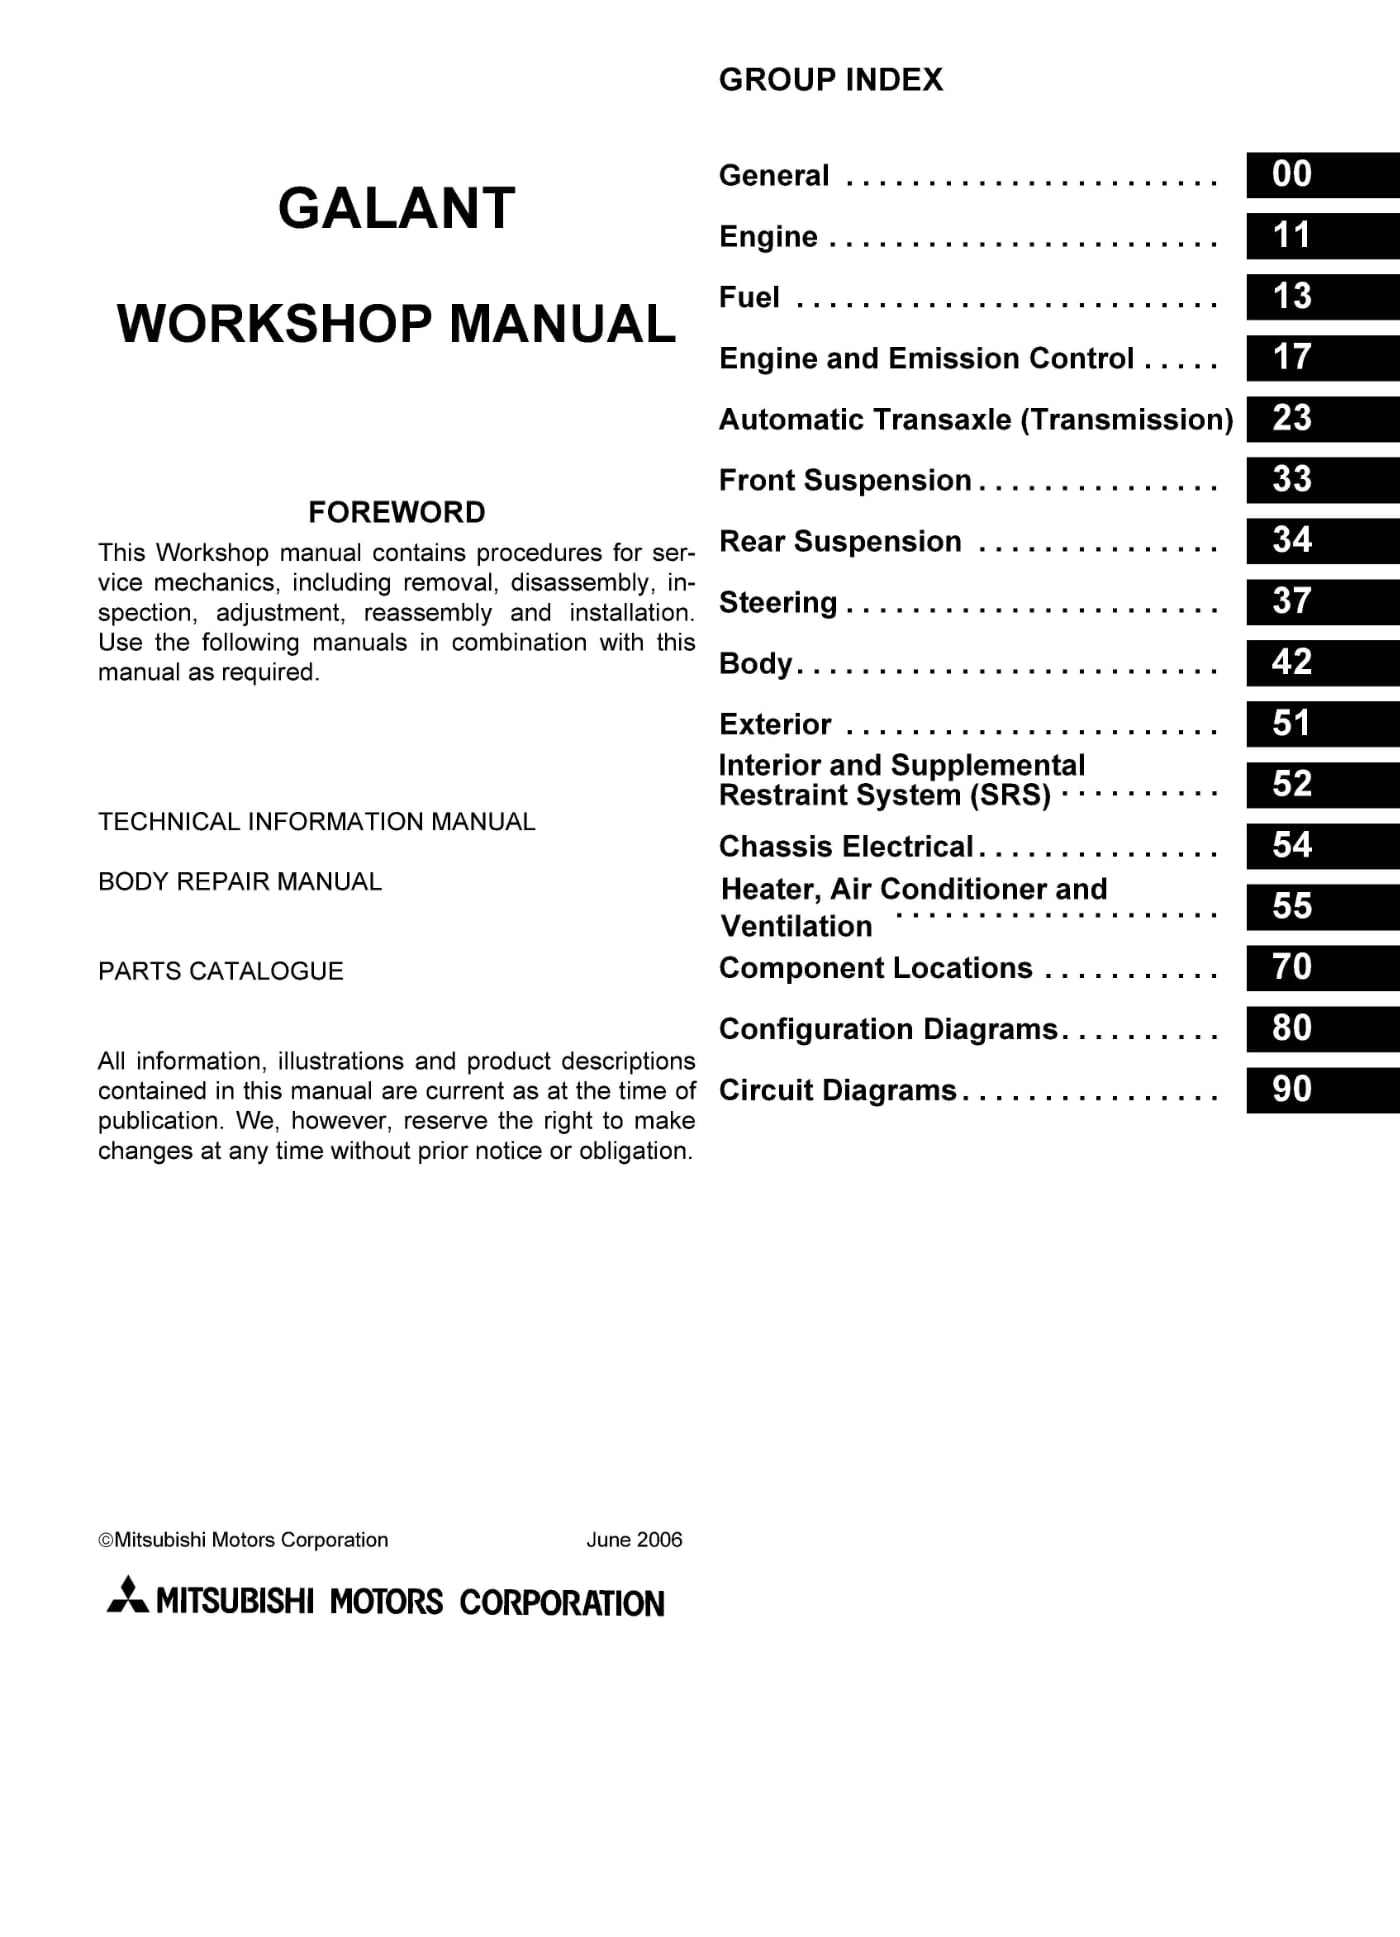 2007 Mitsubishi Galant Repair Manual